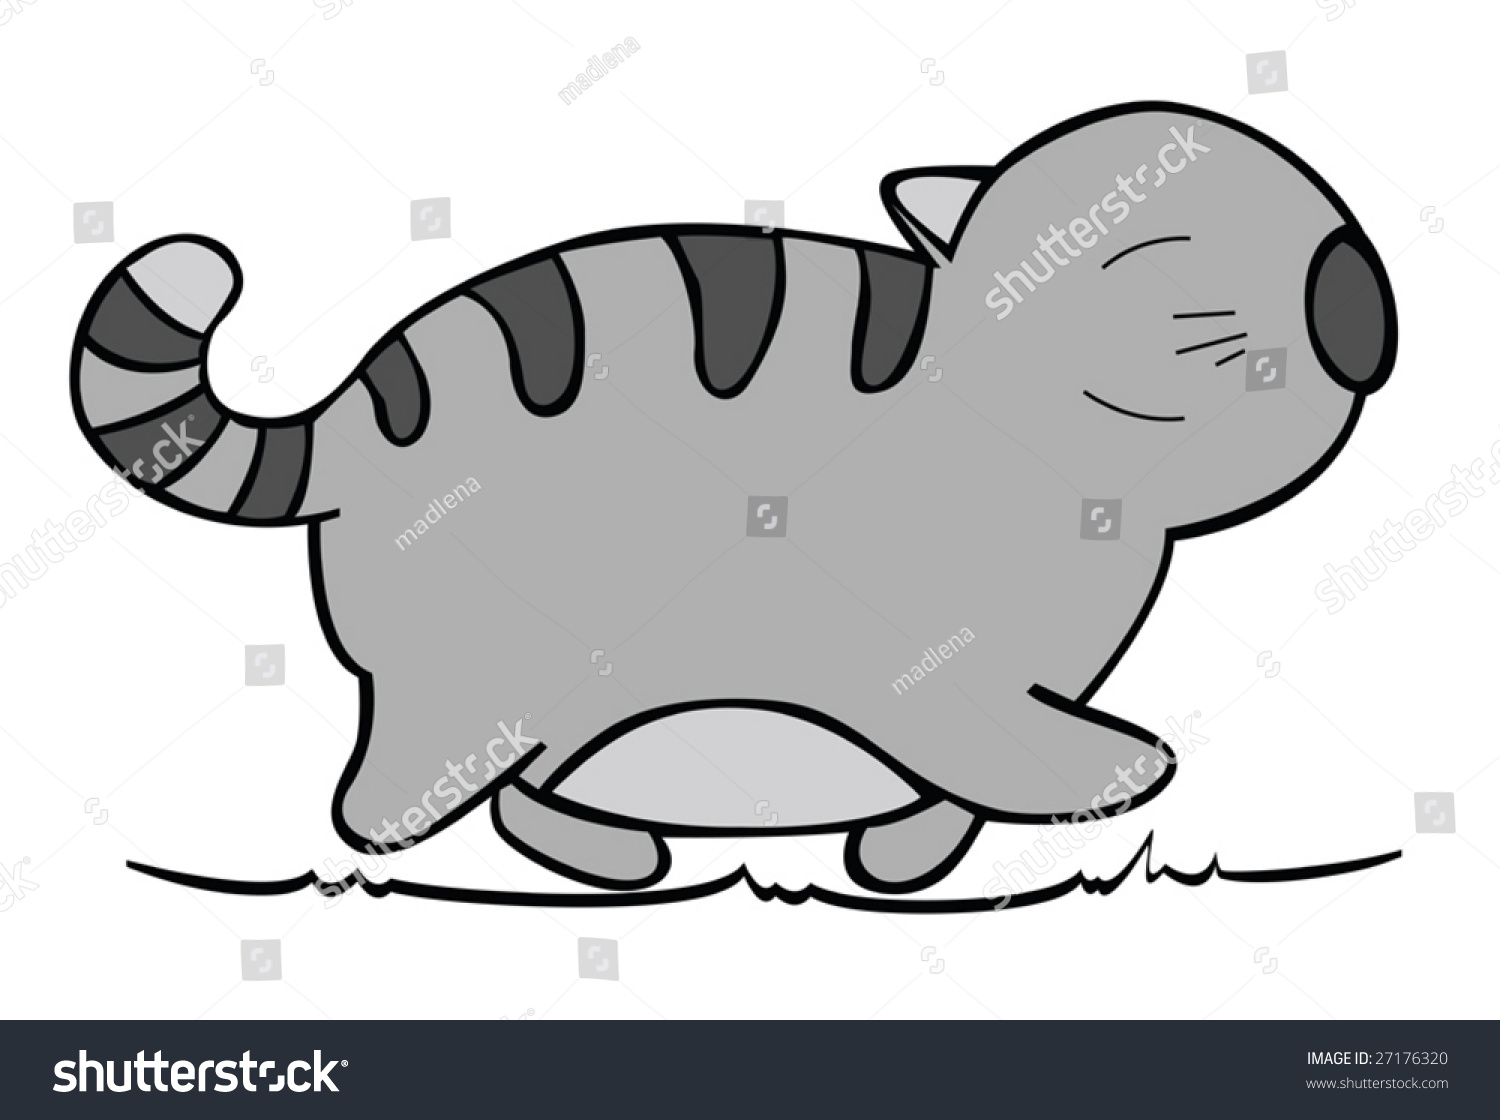 Vector Of Cartoon Cat 02. Funny Illustration. - 27176320 : Shutterstock